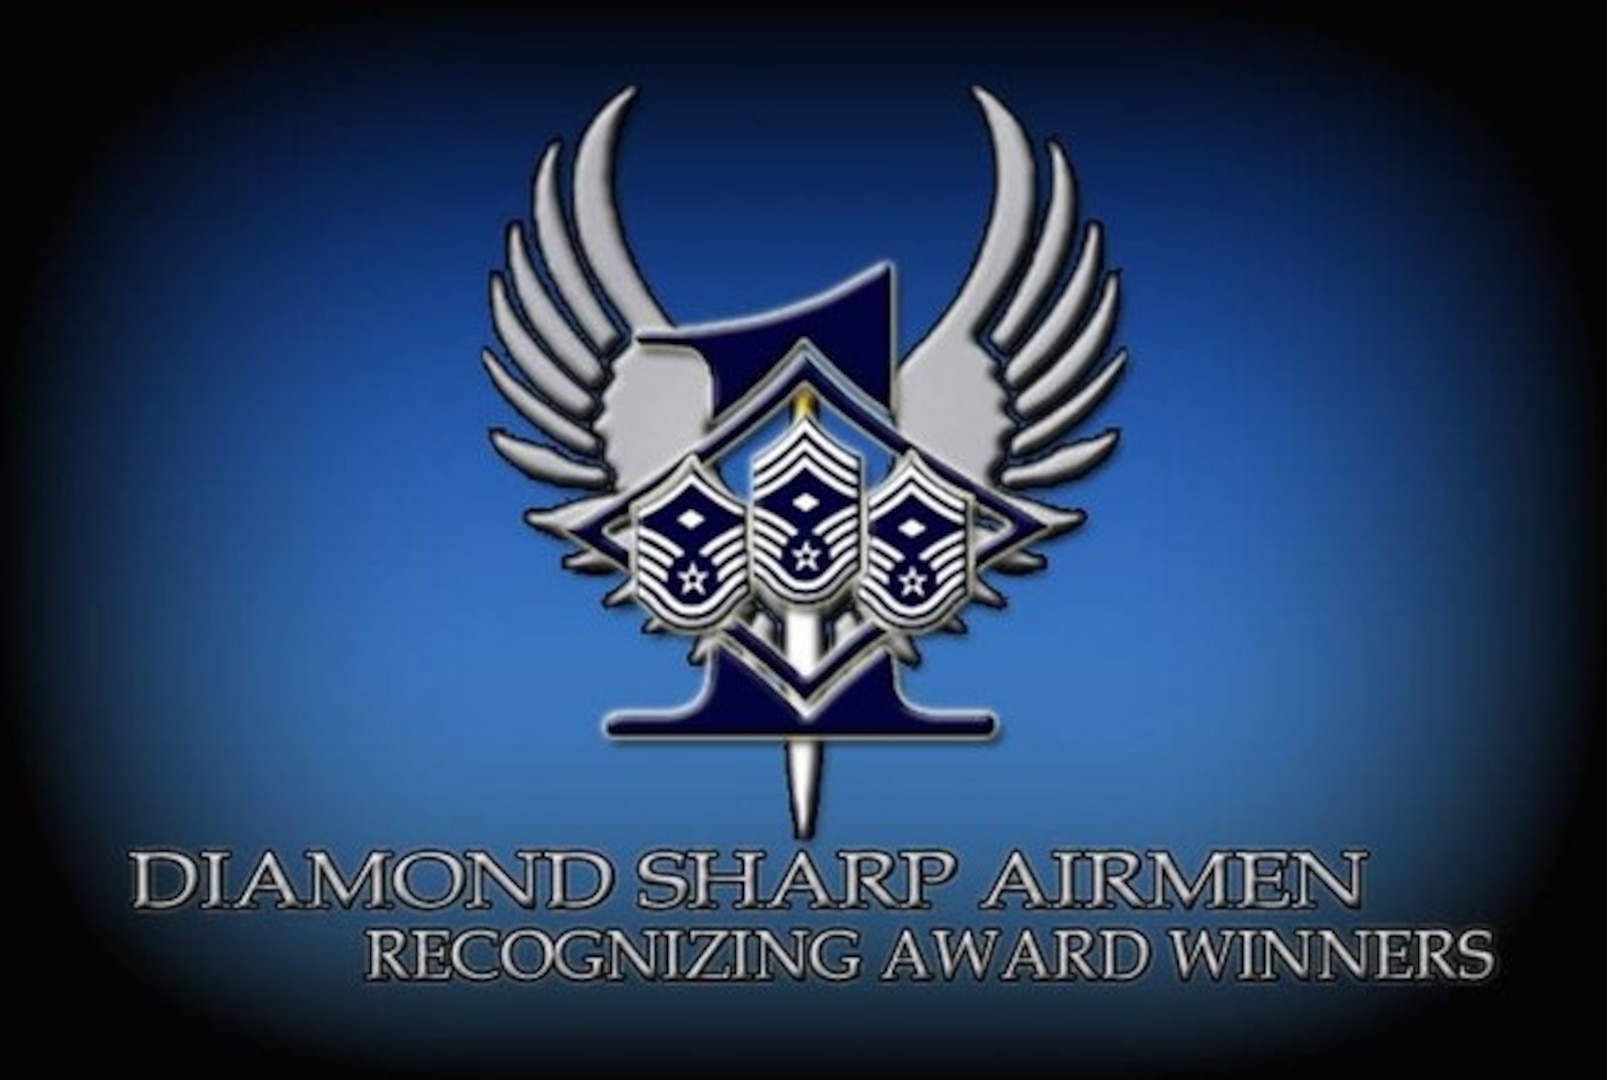 JBSA Diamond Sharp Awards